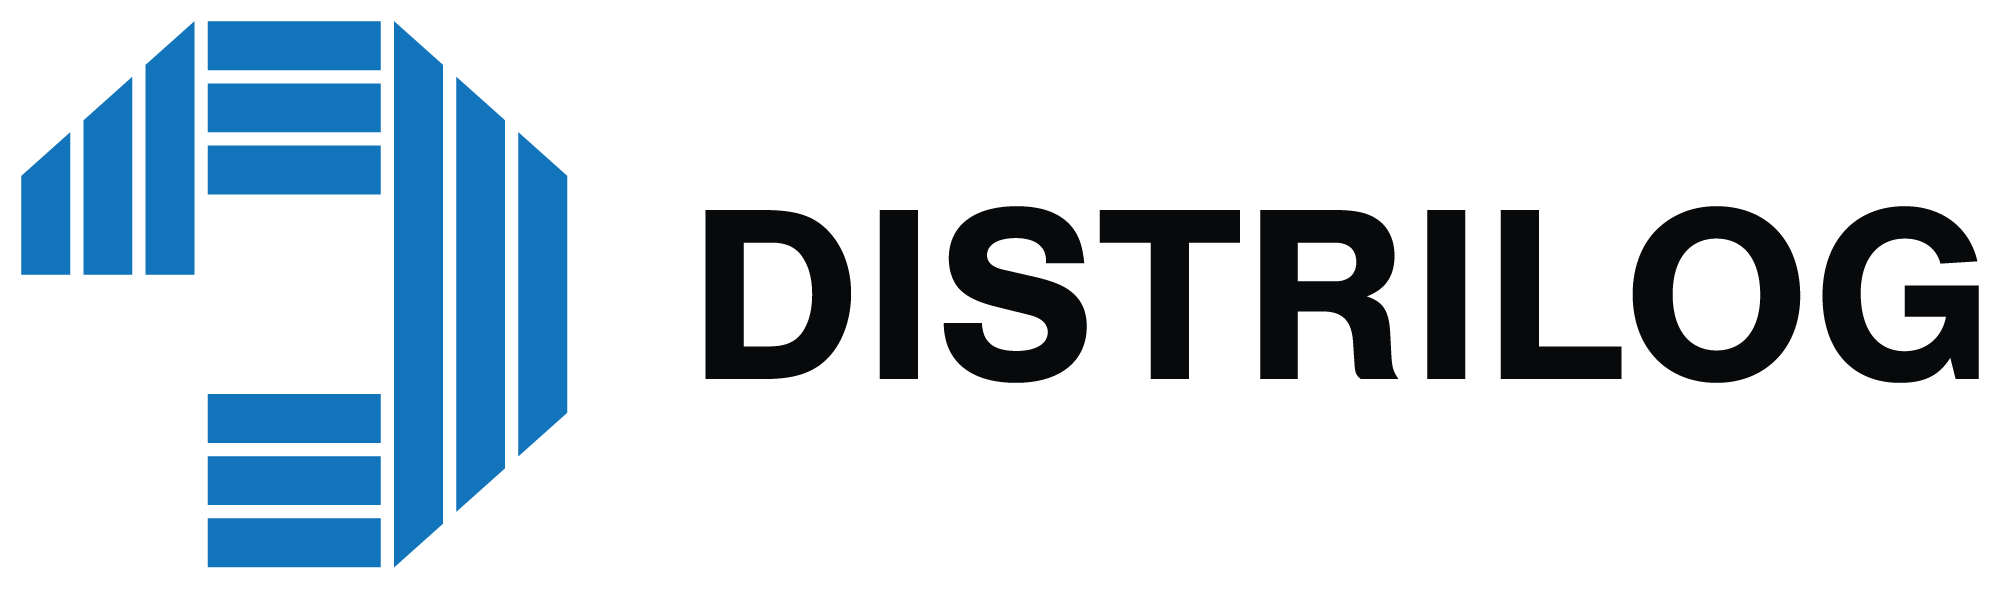 distrilog logo